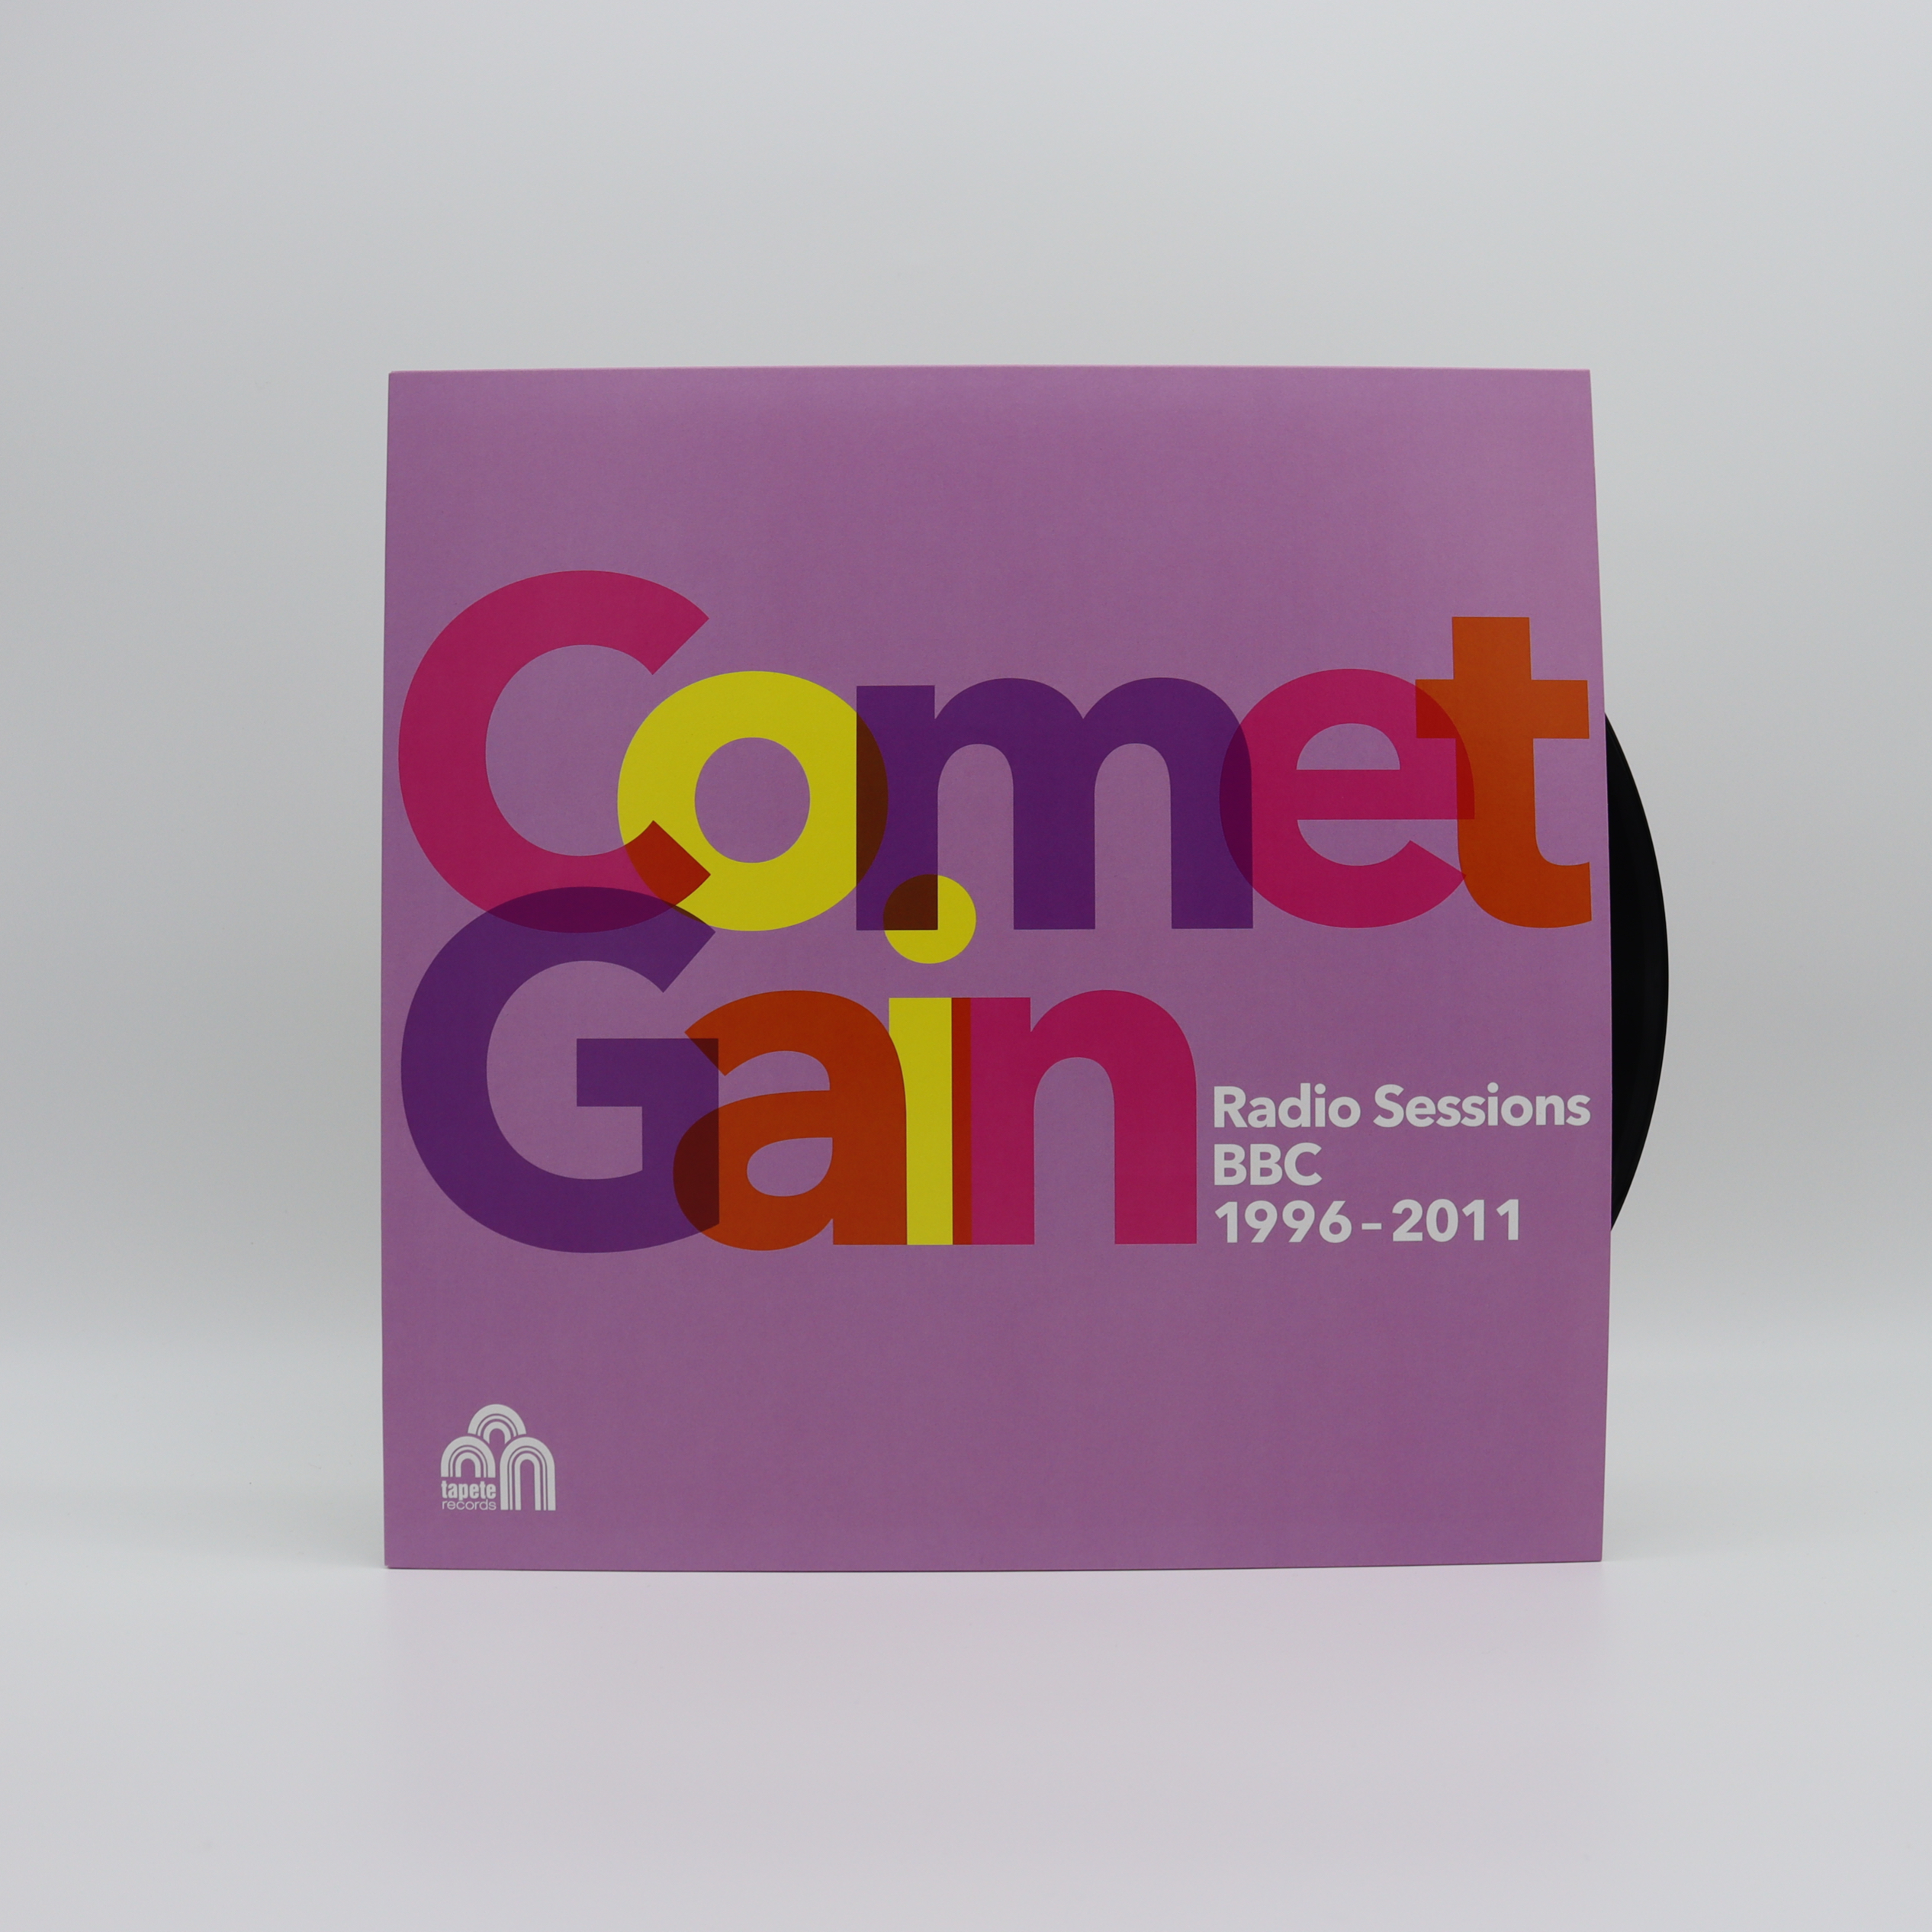 Comet Gain - Radio Sessions (BBC 1996-2011)